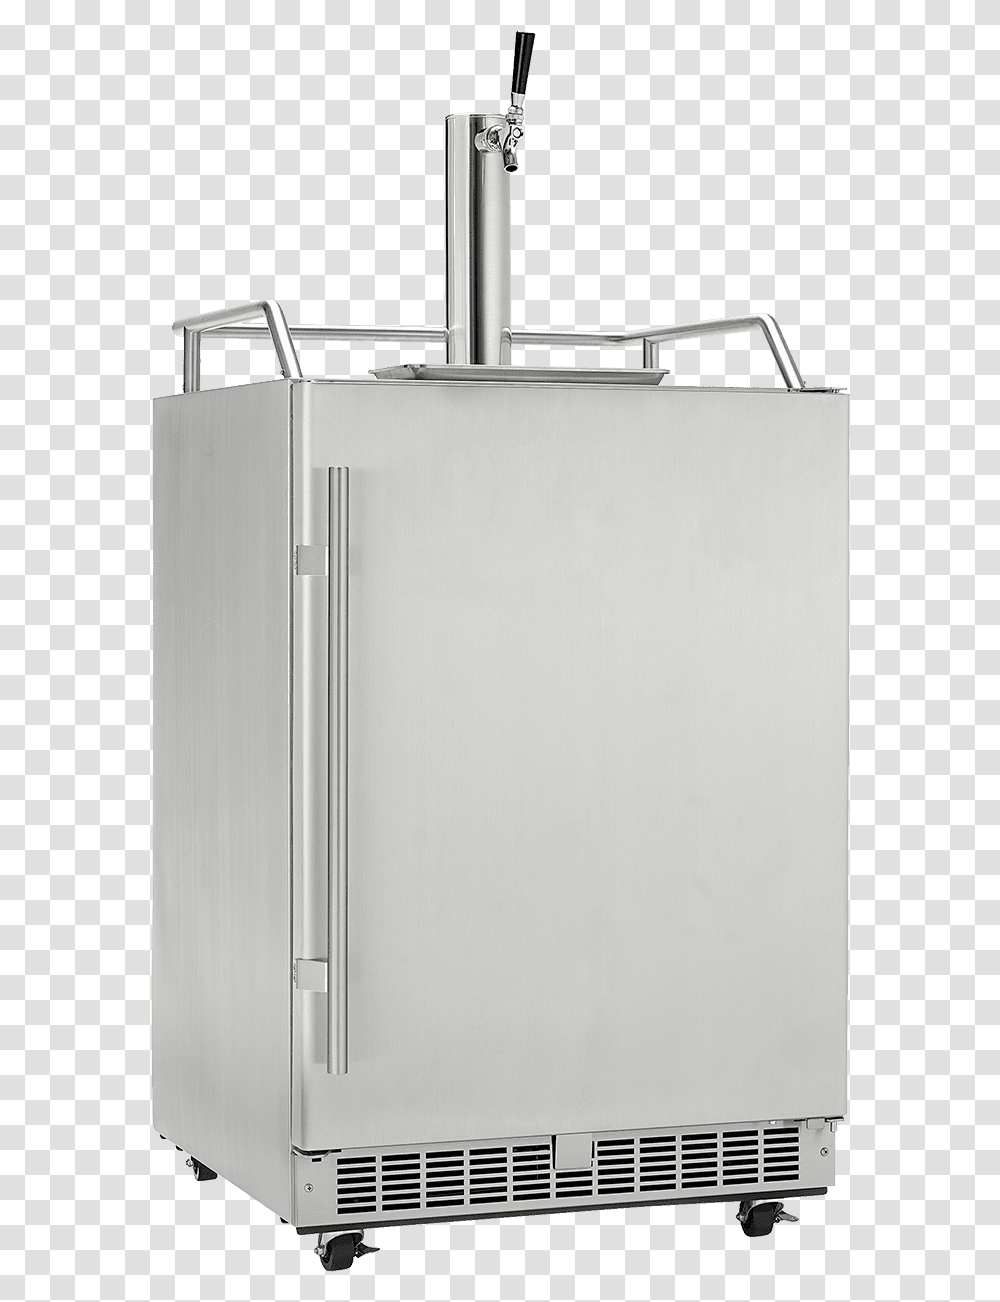 Kegerator, Appliance, Refrigerator, Sink Faucet, Dishwasher Transparent Png